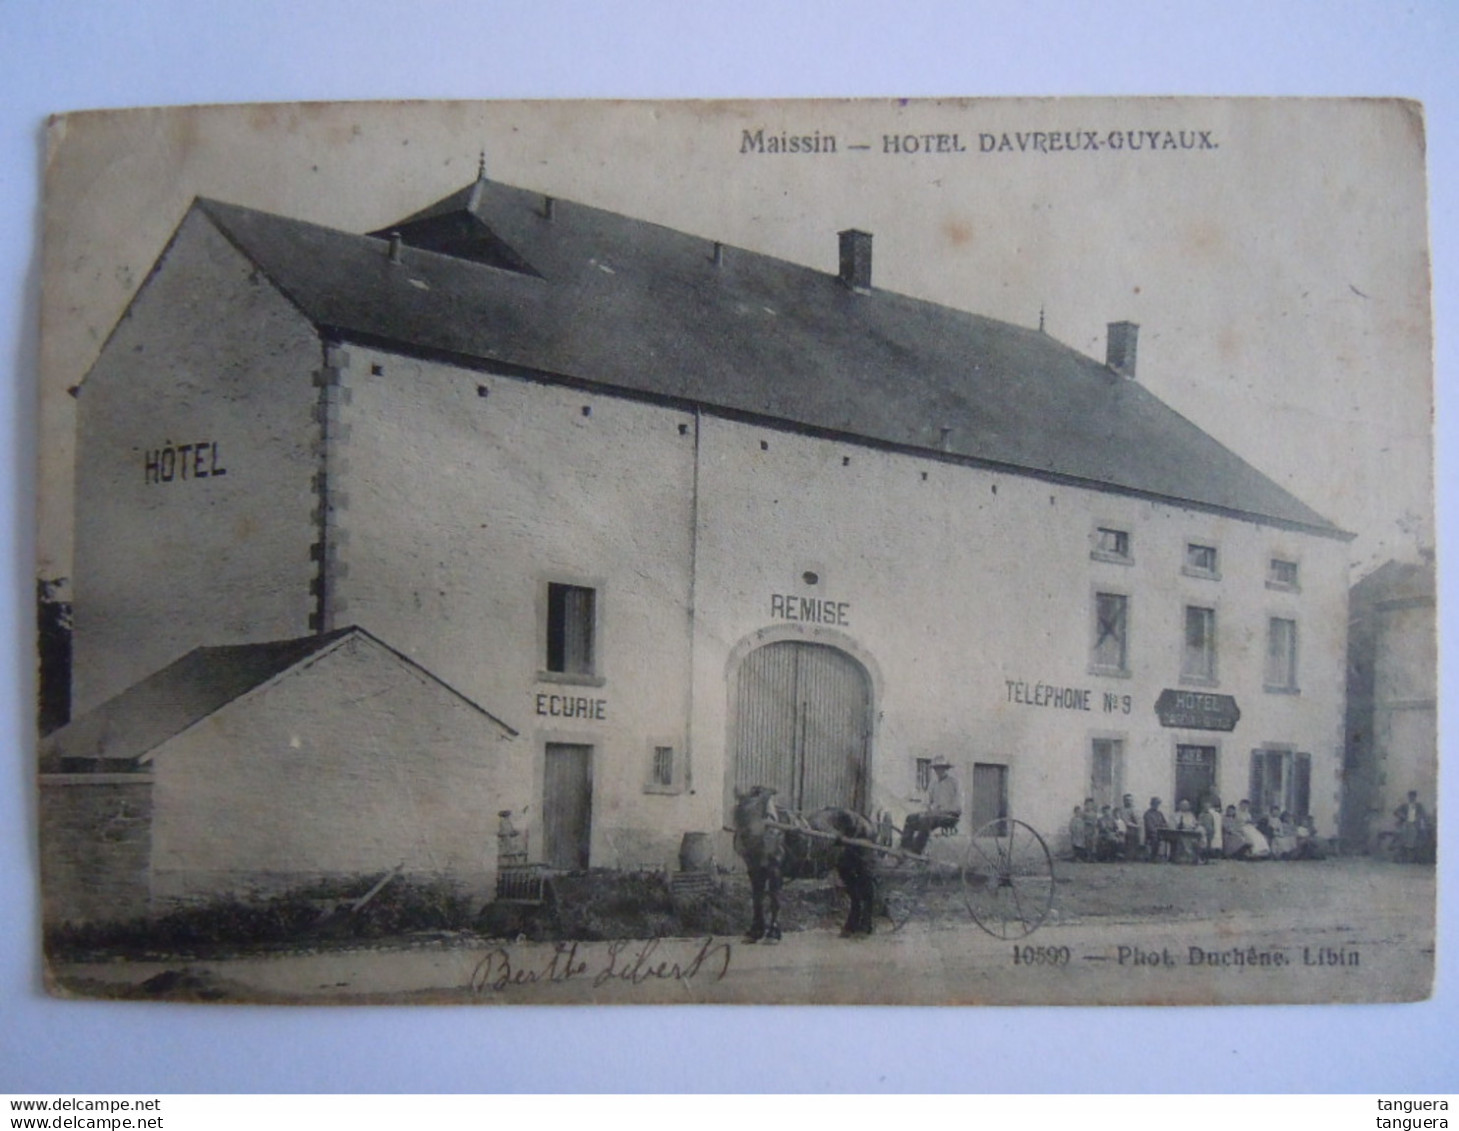 Maissin Hotel Davreux-Guyaux Ecurie Remise Tel.N°9 Animée Attelage Photo Duchêne 10599 Circulée 1906 - Paliseul